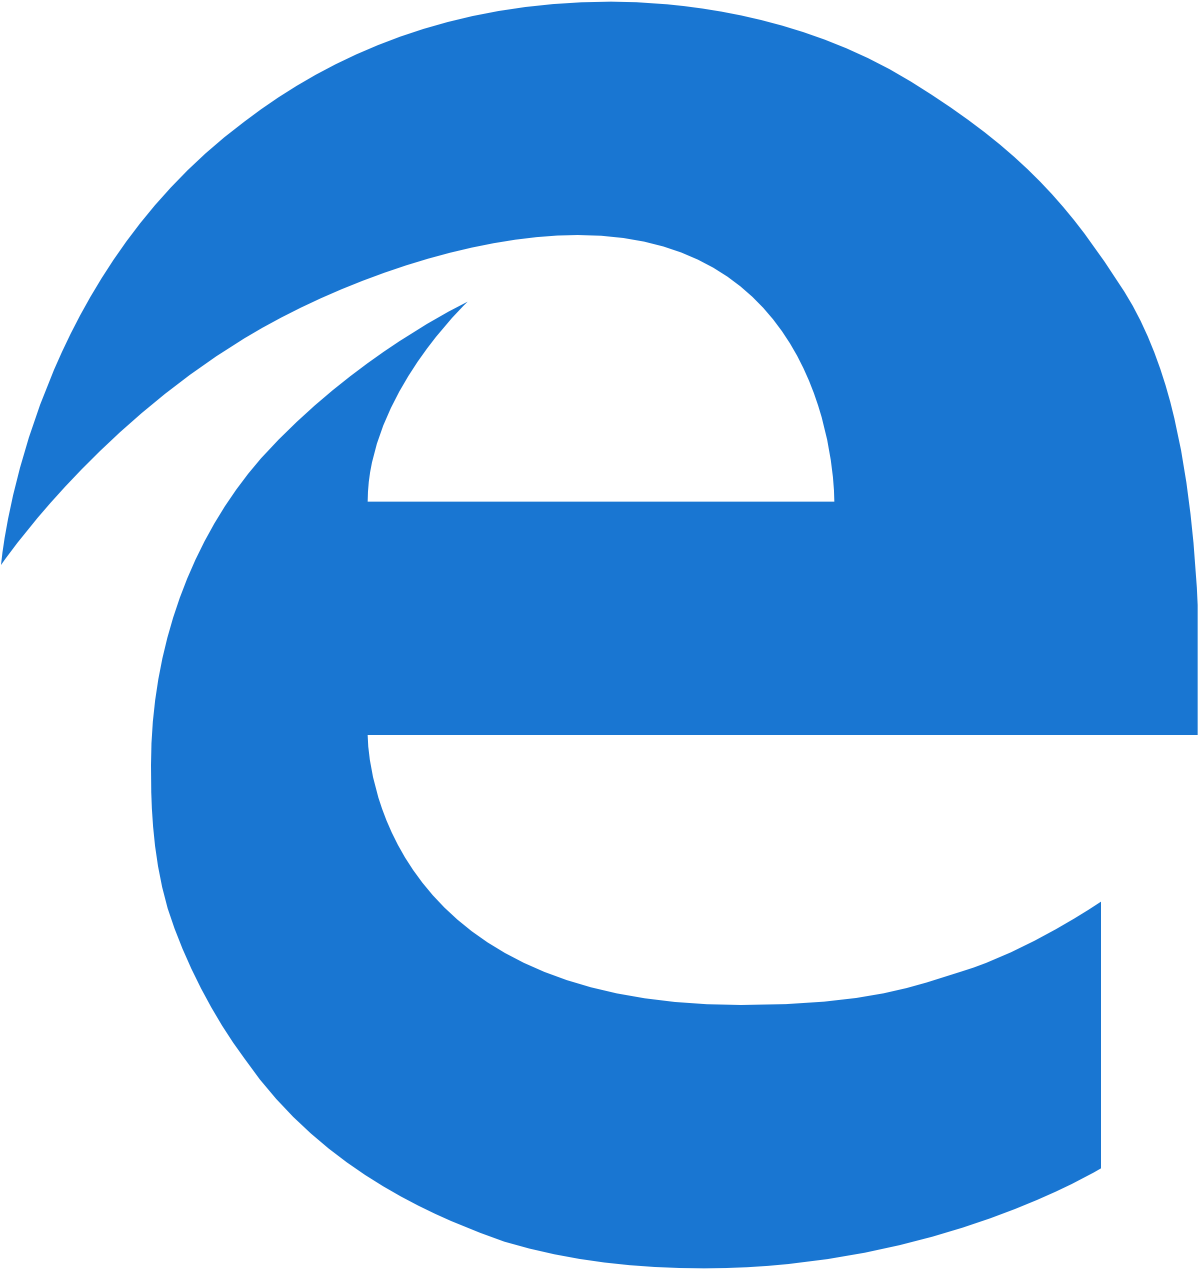 Интернет эксплорер edge. Значок Microsoft Edge. Microsoft Edge иконка PNG. Иконки браузера Microsoft Edge icon. Старая иконка Microsoft Edge.